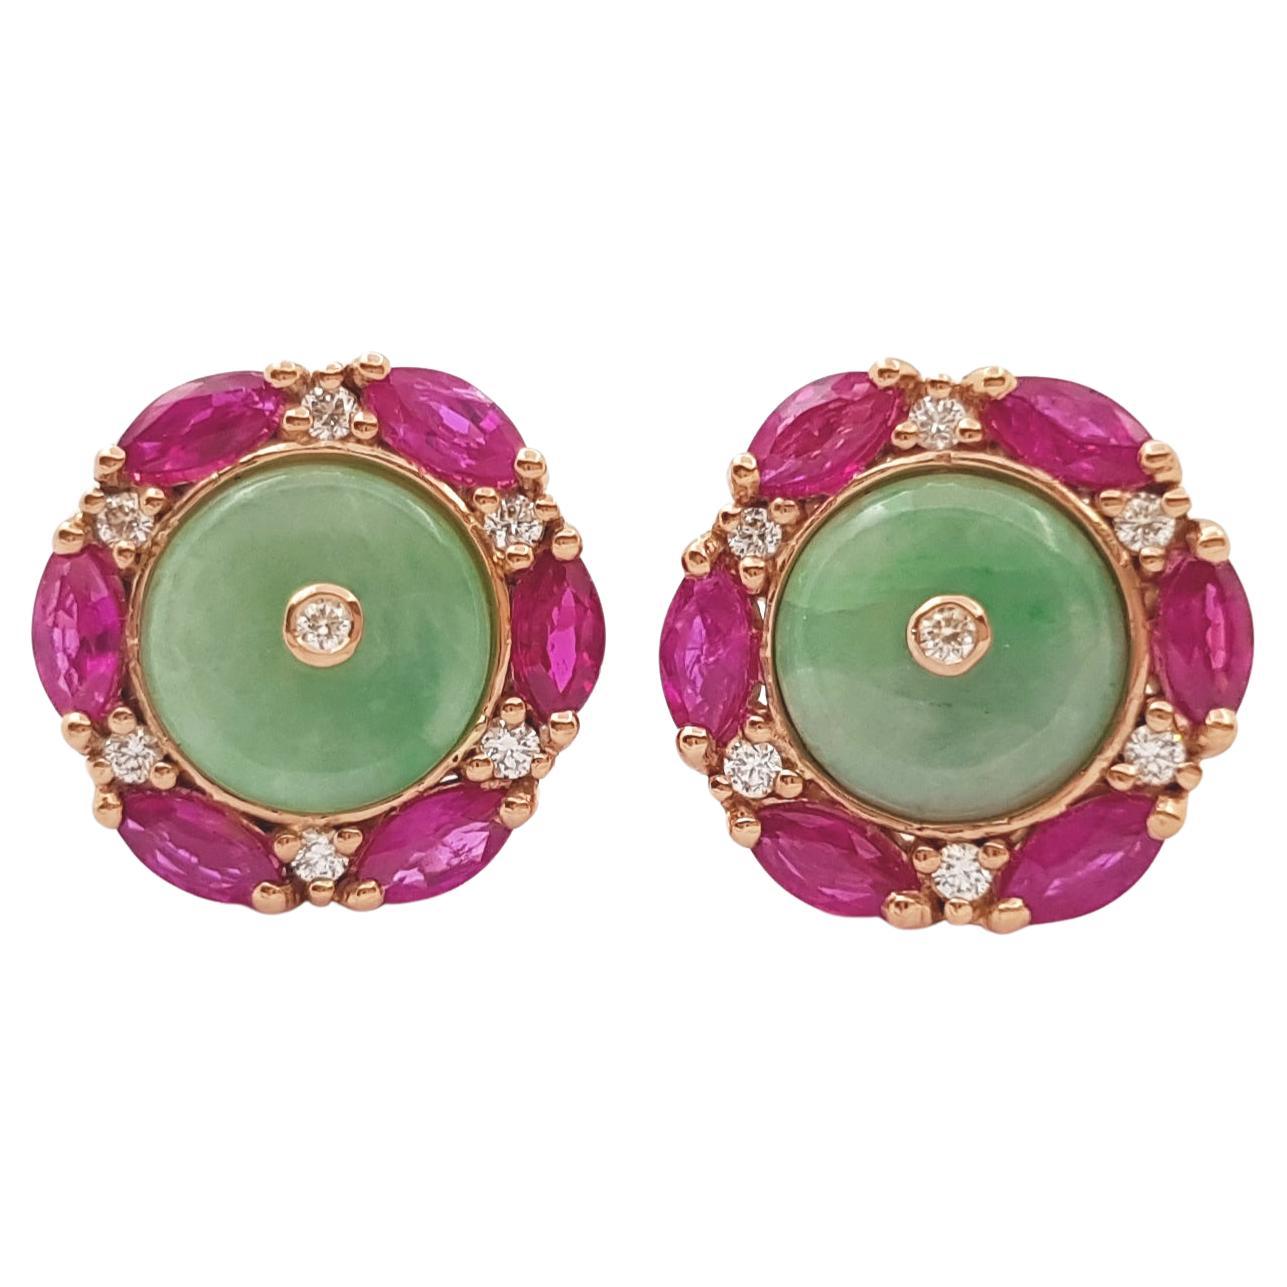 Boucles d'oreilles en jade, rubis et diamants montées sur or rose 18 carats